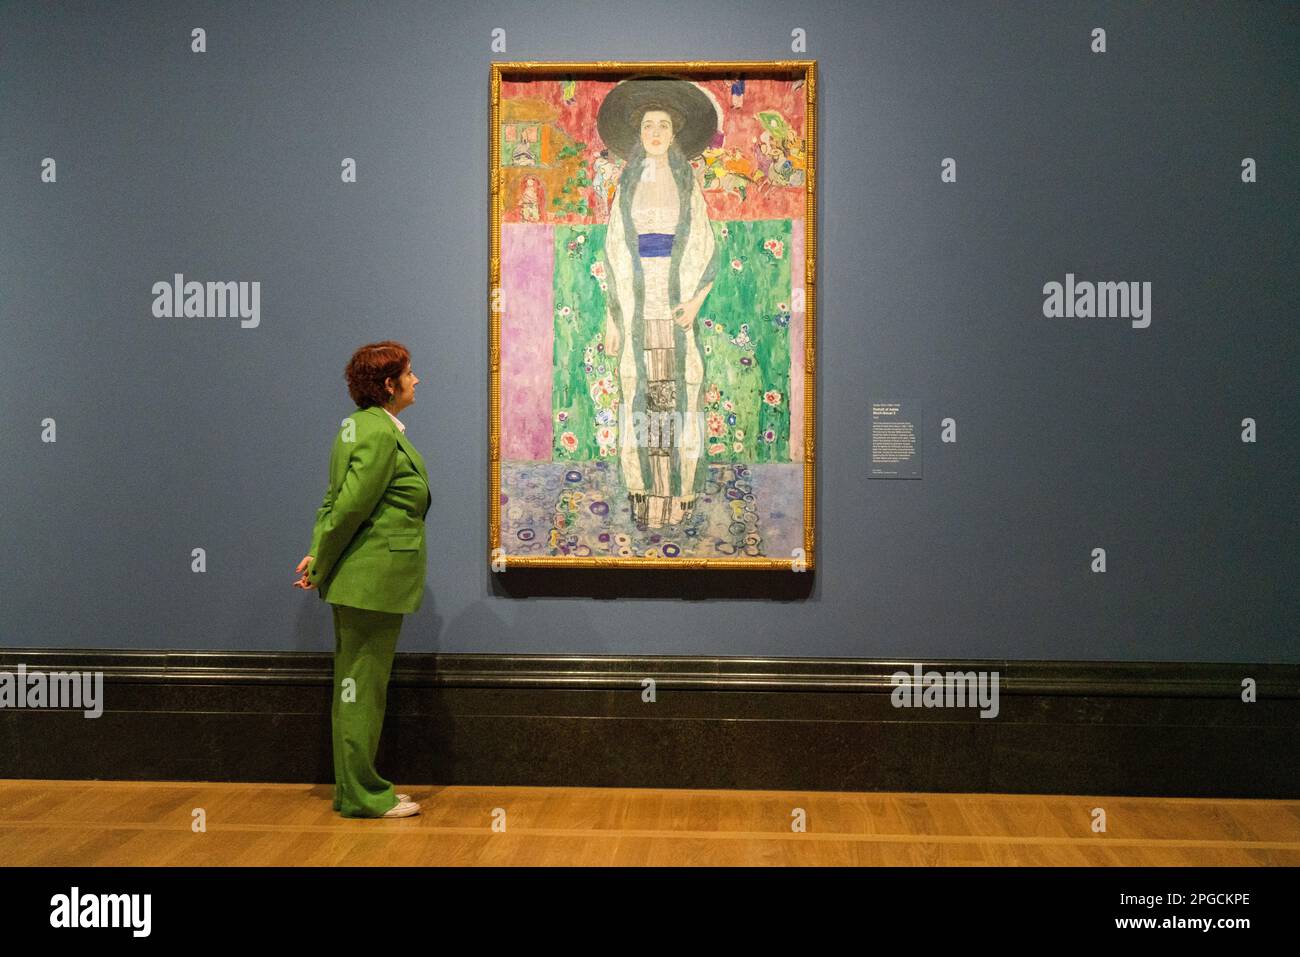 Londra, Regno Unito 22 marzo 2023. Gustav Klimt , Ritratto di Adele Bloch-Bauer II 1912 olio su tela. Anteprima di After Impressionism Inventing Modern Art, grande nuova mostra di circa un centinaio di dipinti e sculture di artisti come Cezanne, Van Gogh, Rodin, Picasso, Matisse, Klimt, Käthe Kollwitz, Sonia Delaunay, Kandinsky e Mondrian e comprende alcune delle più importanti opere d'arte create tra il 1886 e circa il 1914. Credit: amer Ghazzal/Alamy Live News Foto Stock